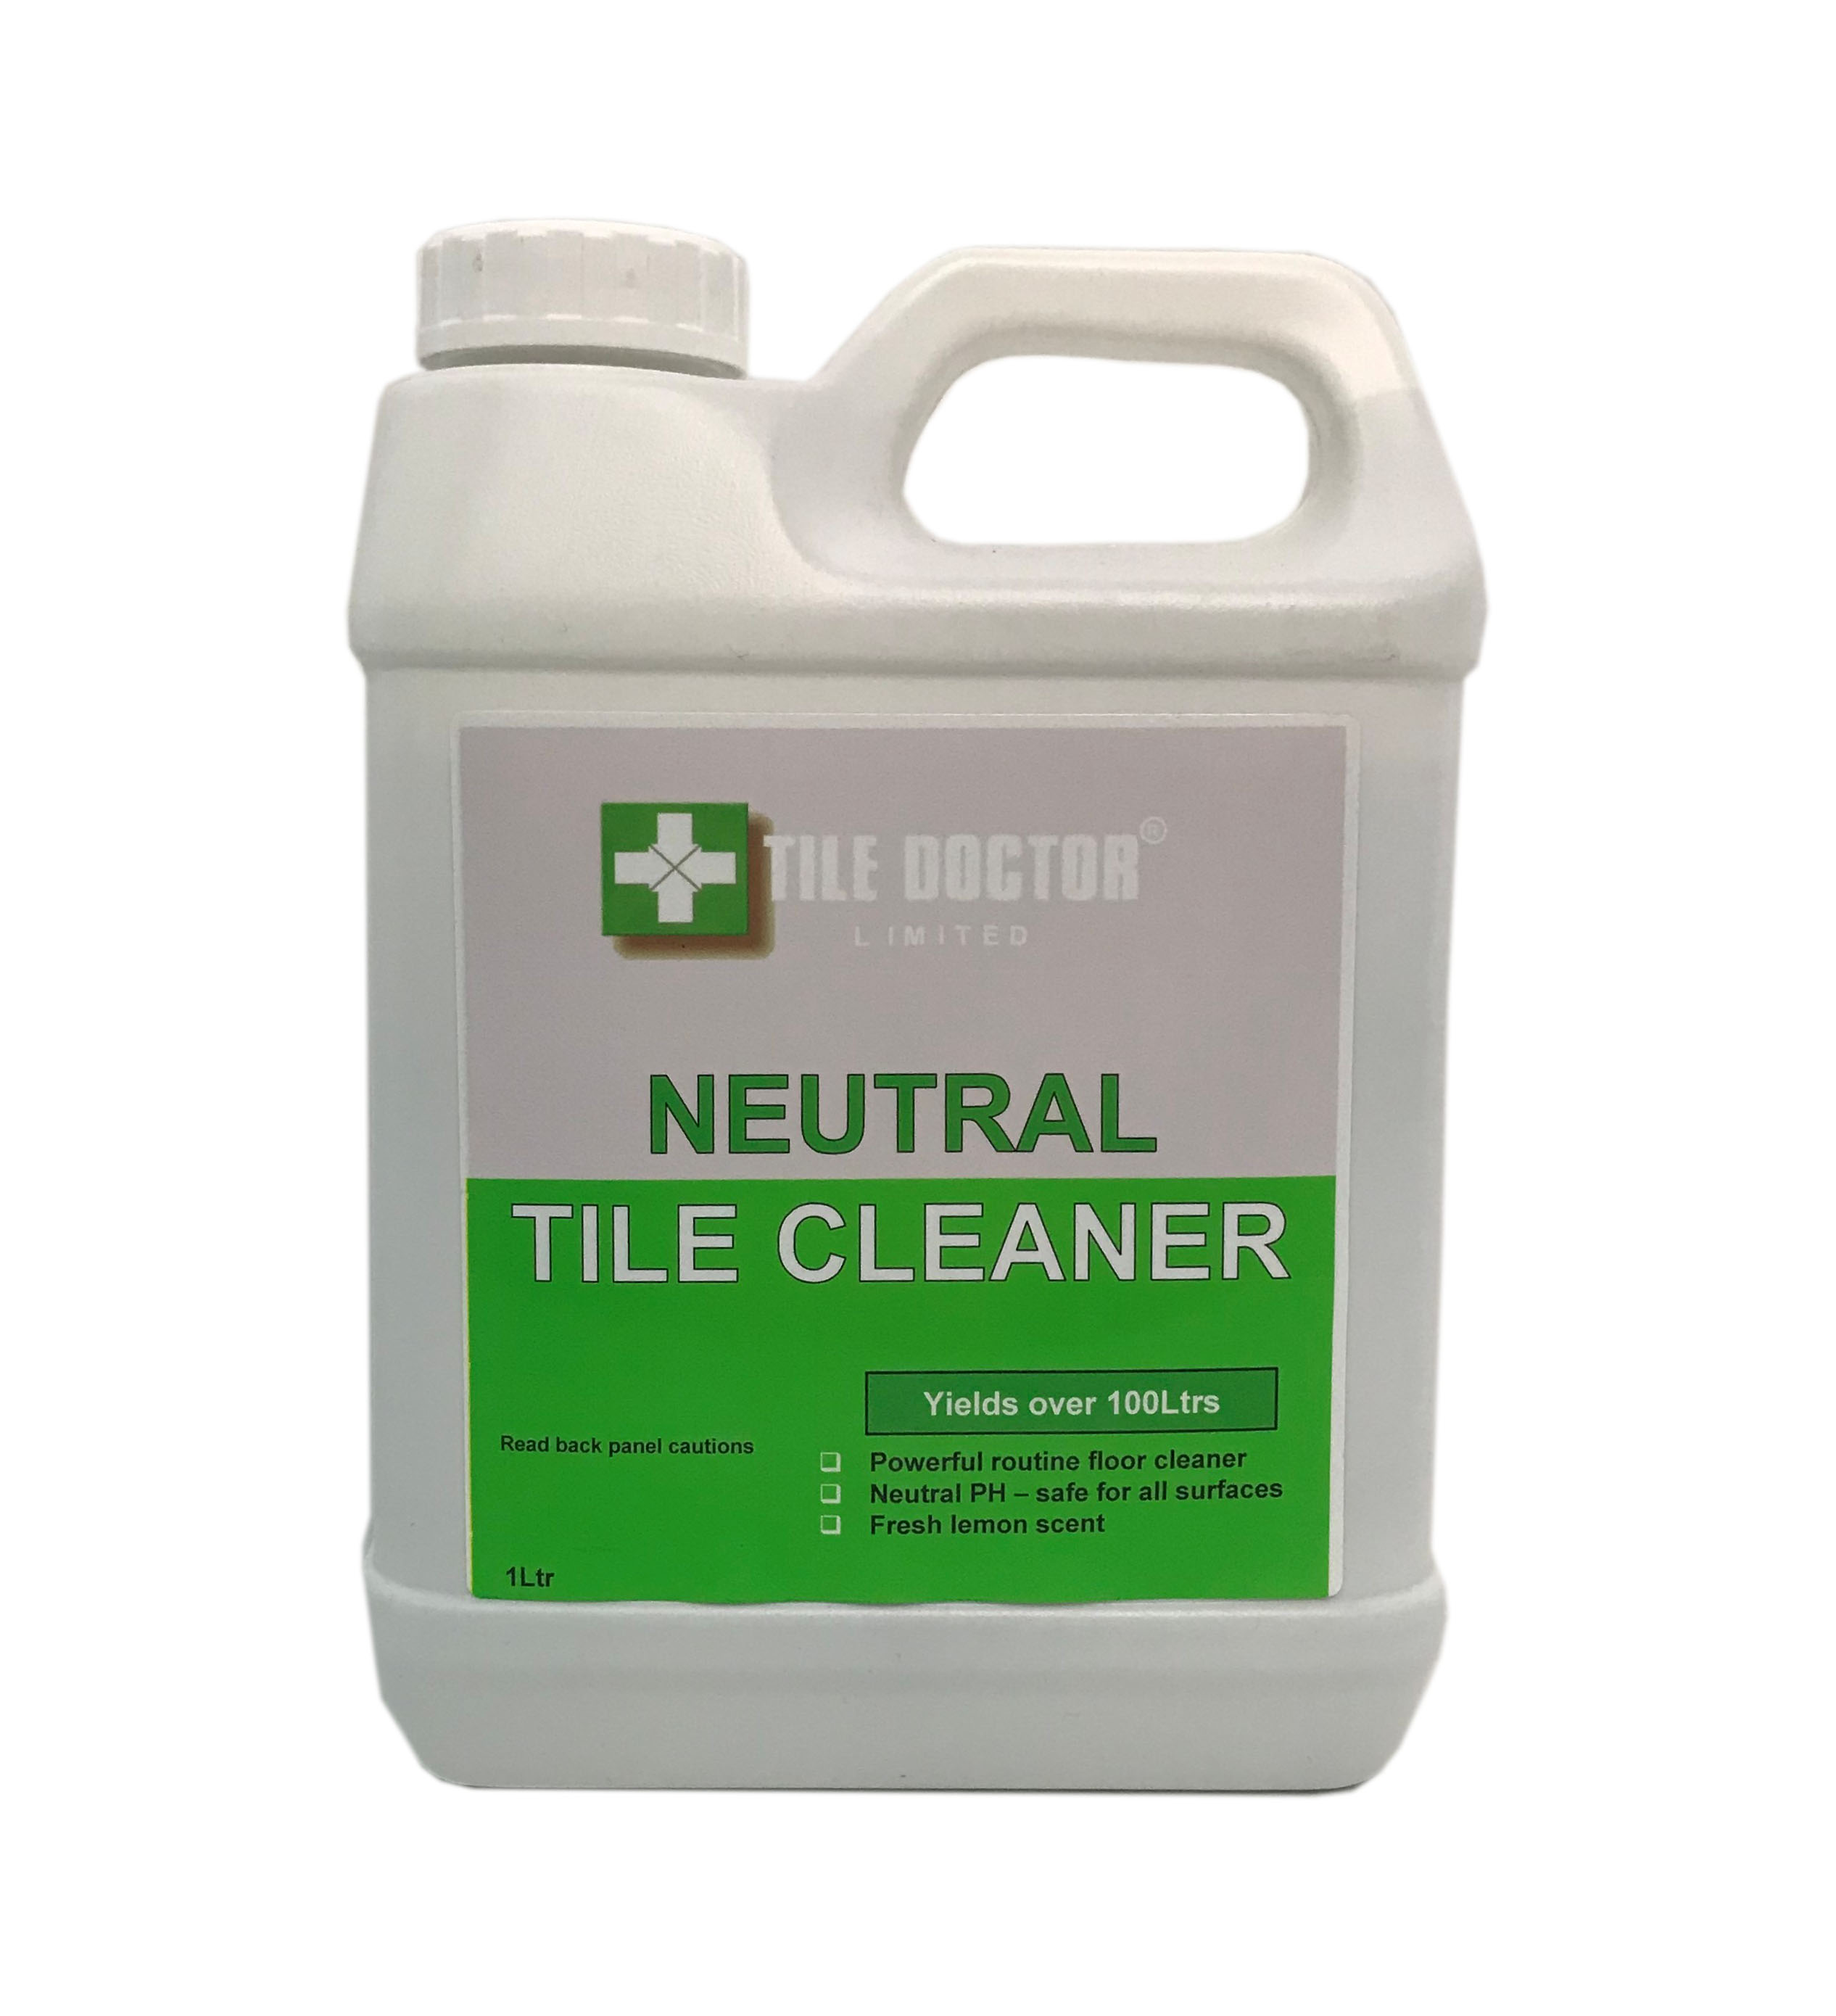 Tile Doctor Neutral Tile Cleaner 1 litre